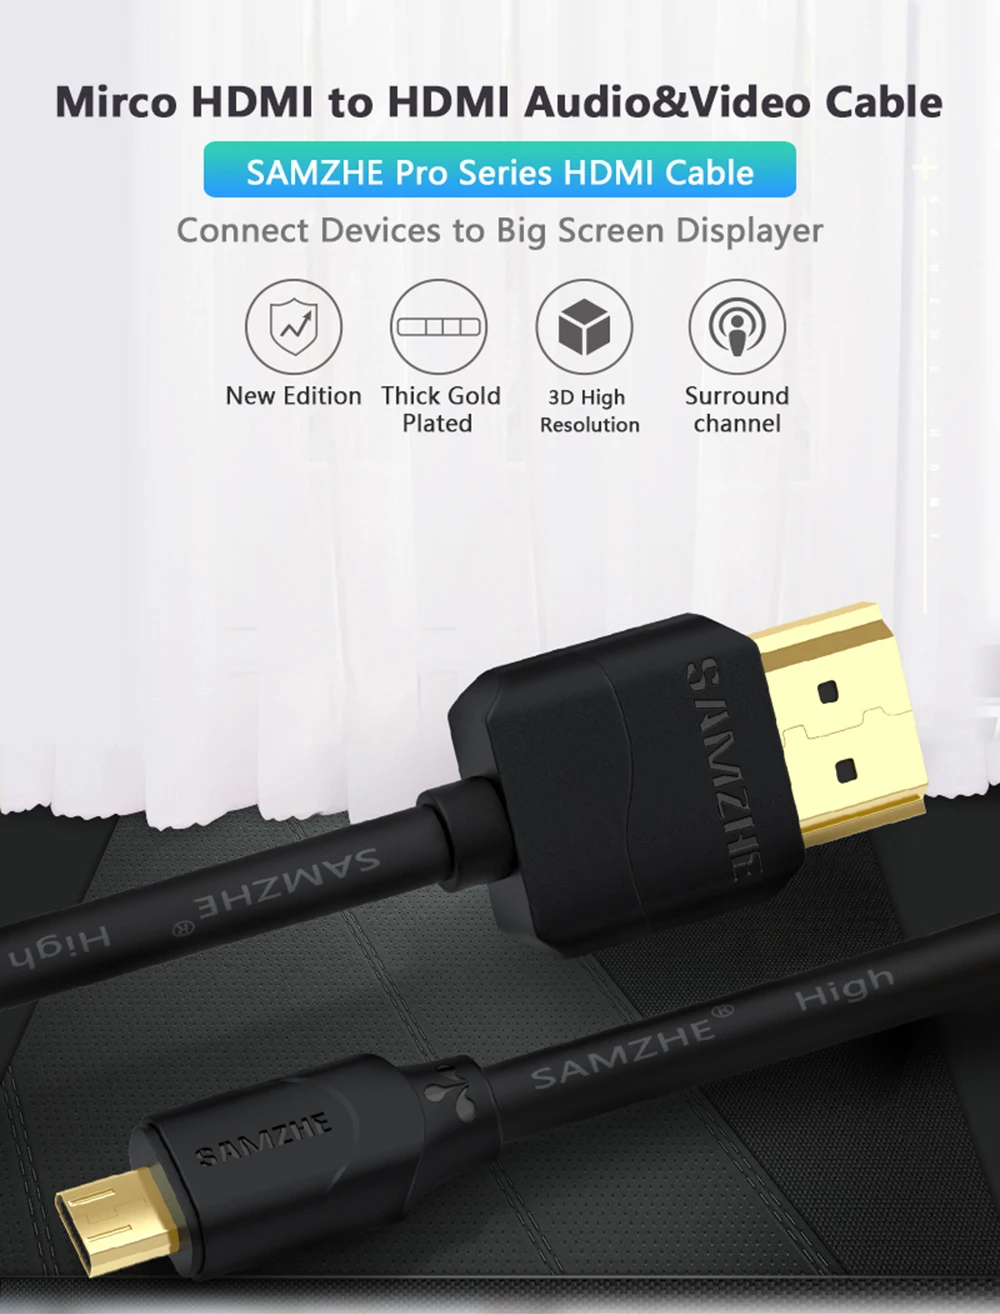 SAMZHE микро HDMI к HDMI мужчин и мужчин кабель-удлинитель для телефона Ipad подключение с большим экраном телевизора Displayer